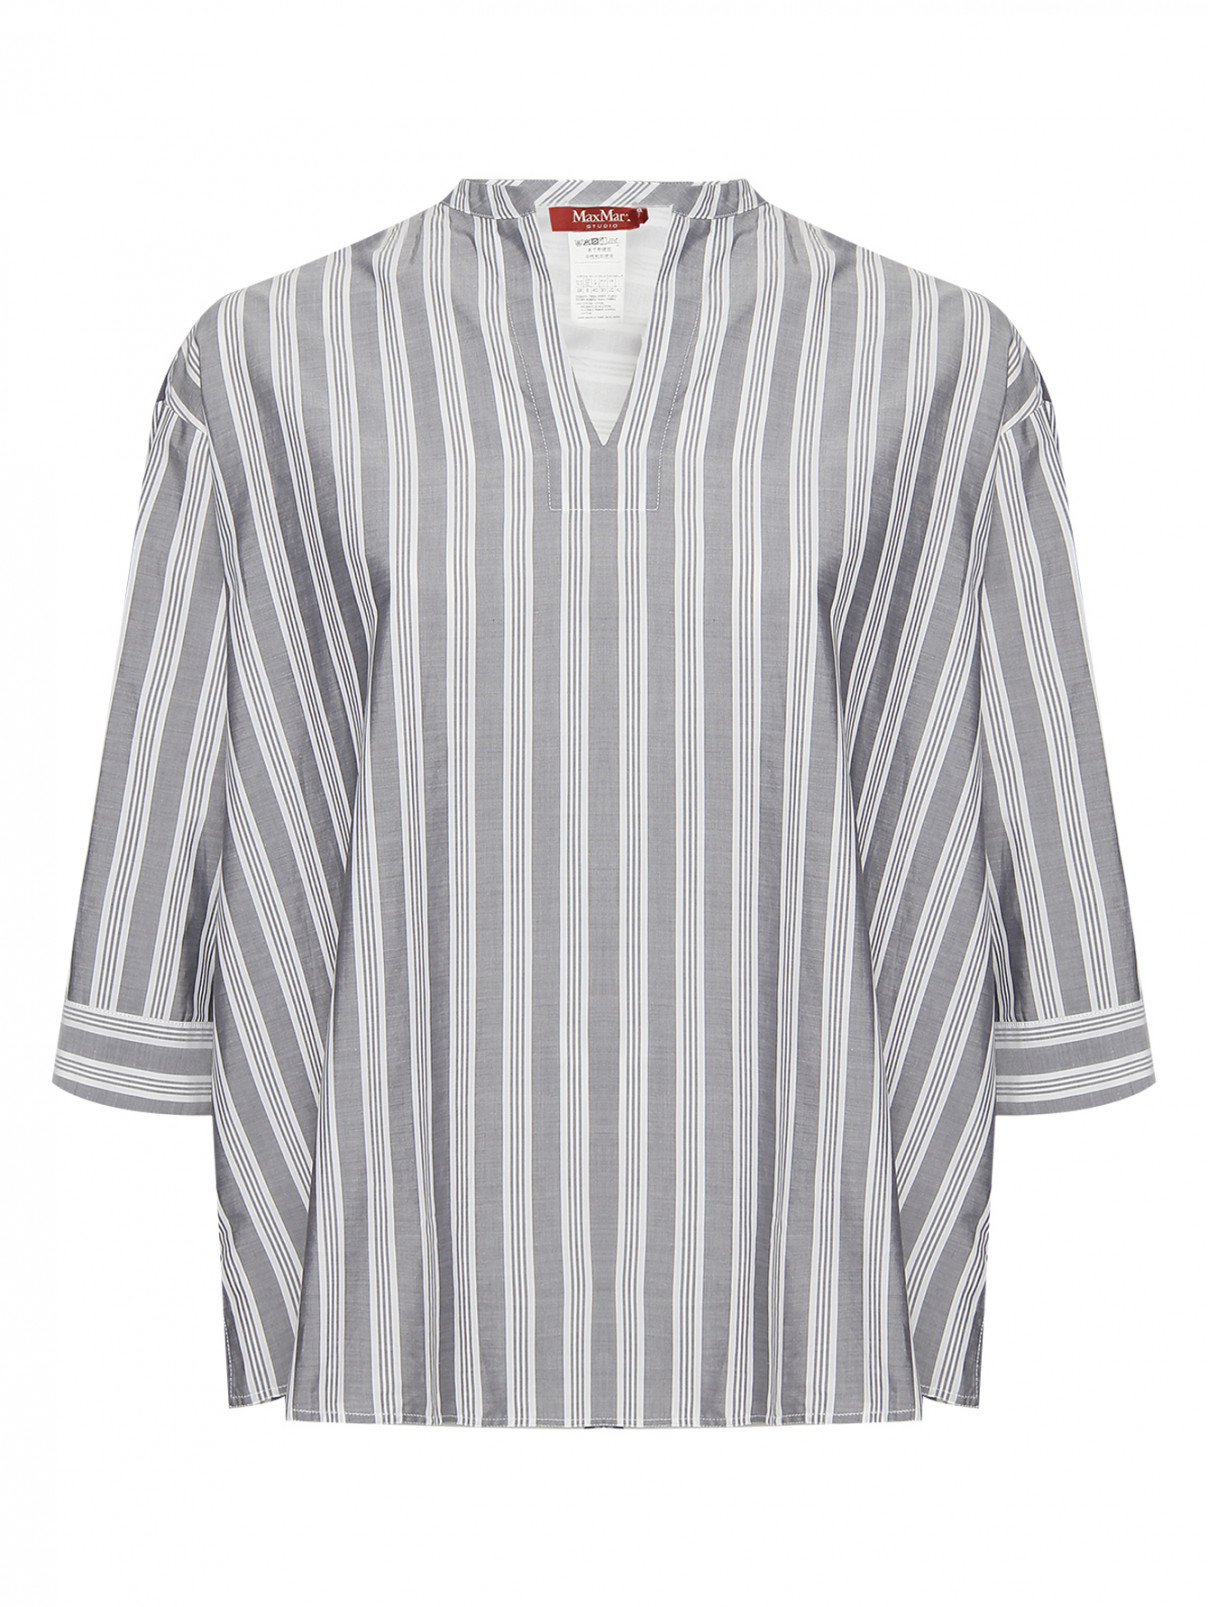 Блуза из хлопка с узором полоска Max Mara  –  Общий вид  – Цвет:  Серый